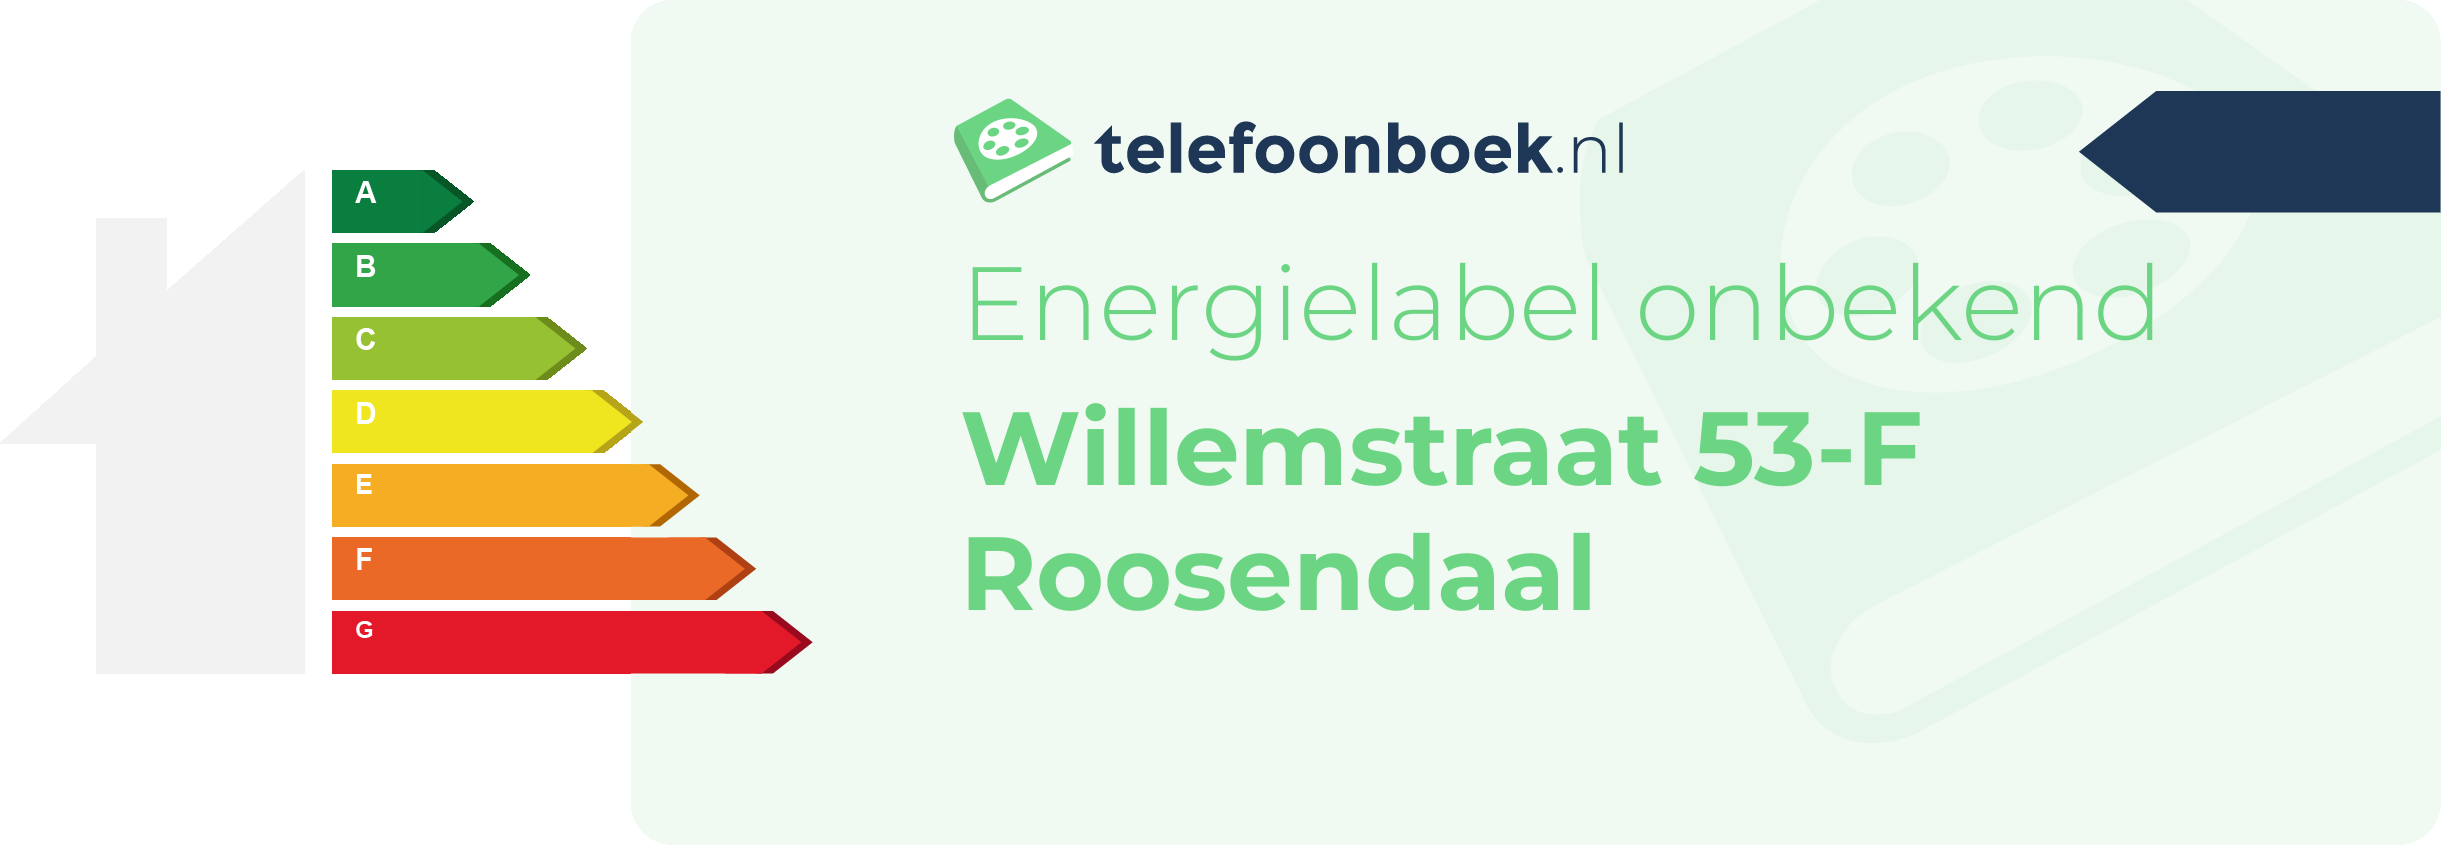 Energielabel Willemstraat 53-F Roosendaal